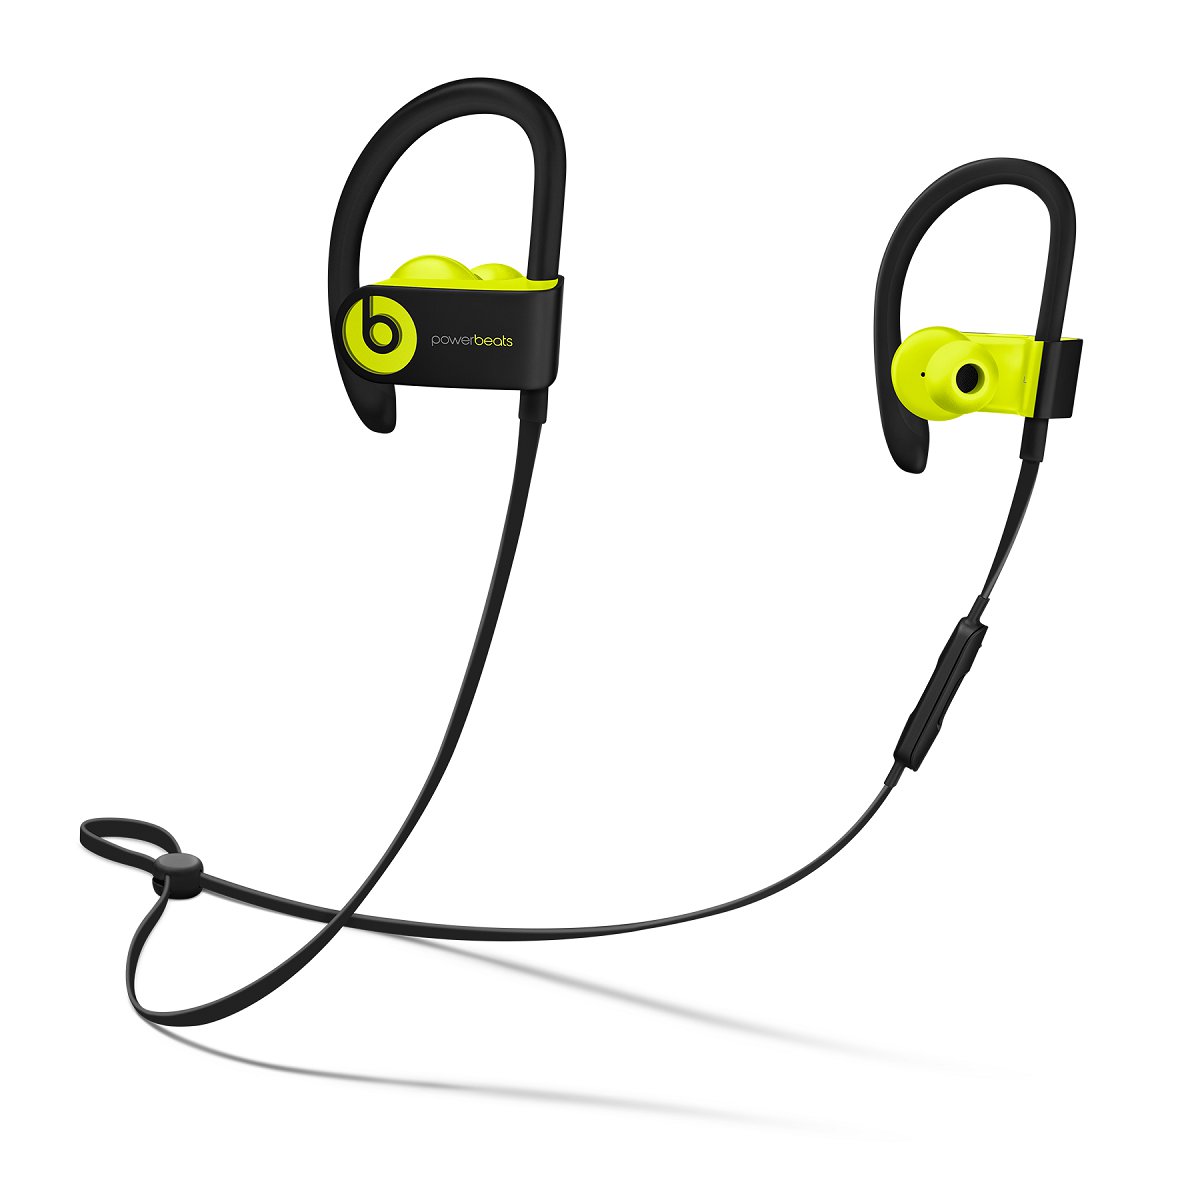 Auriculares Apple PowerBeats 3 - Bluetooth - A Prueba de Agua - Micrófono -  Amarillo - MNN02BE/A